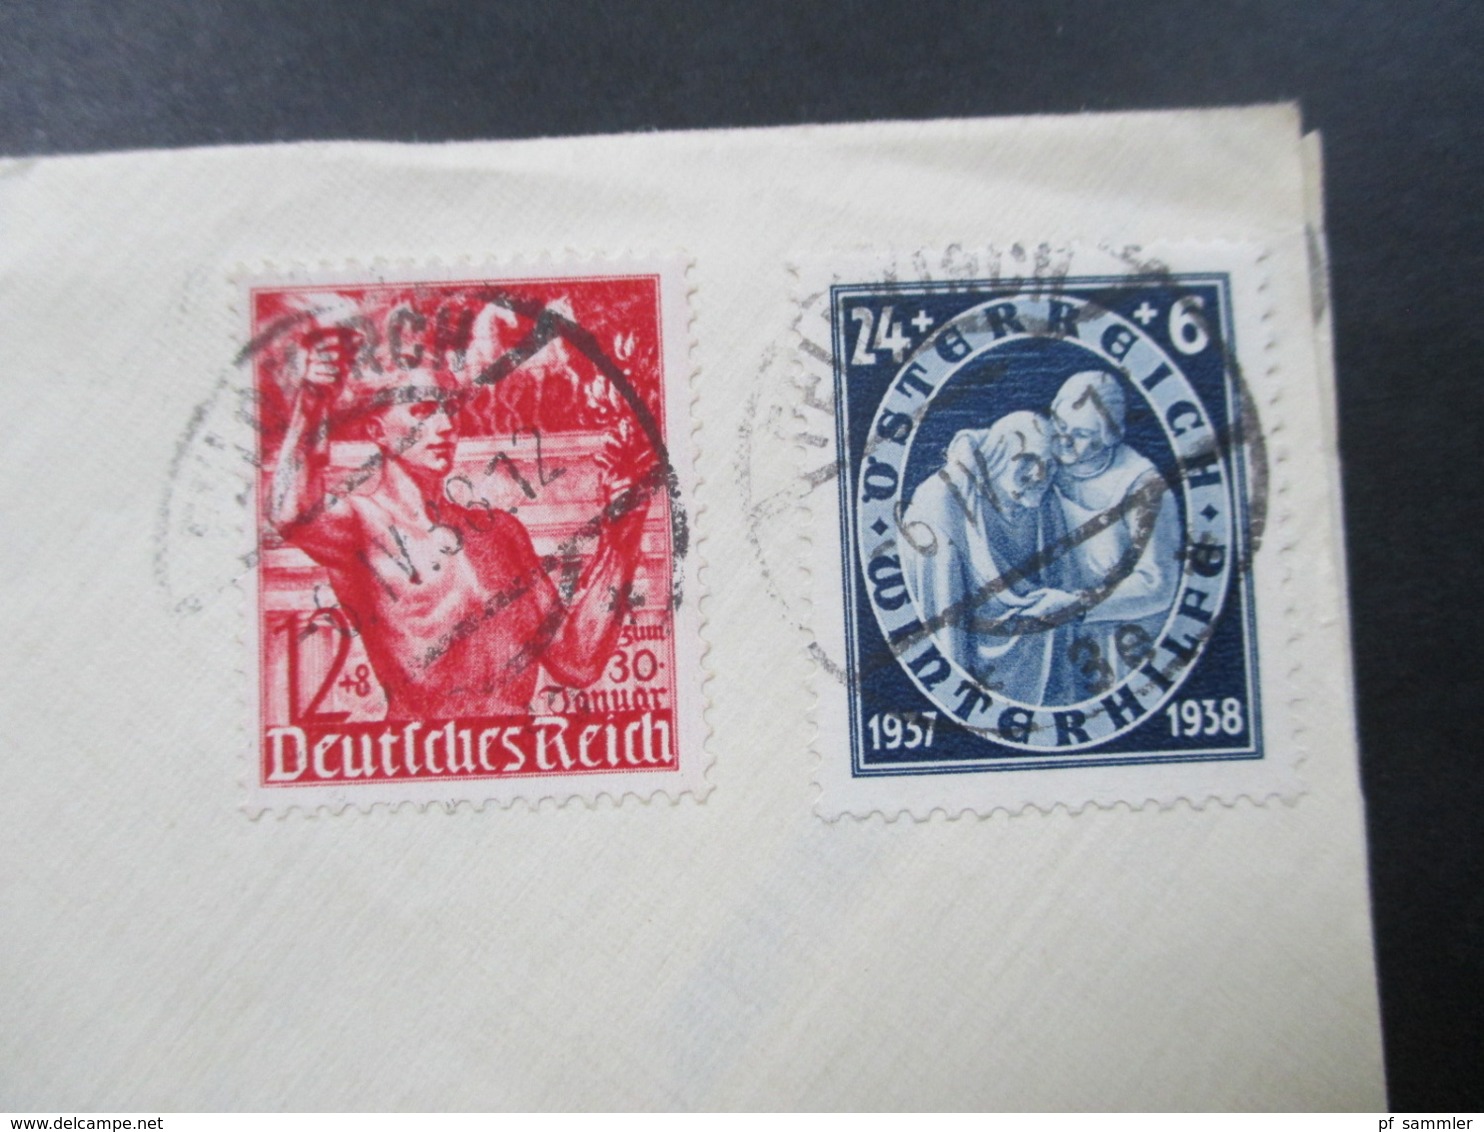 Österreich / DR Ostmark MiF Öst. Nr. 644 Und DR Nr. 661 Stempel Feldkirch 6.4.1938 (3. Gültigkeitstag) RRR - Covers & Documents